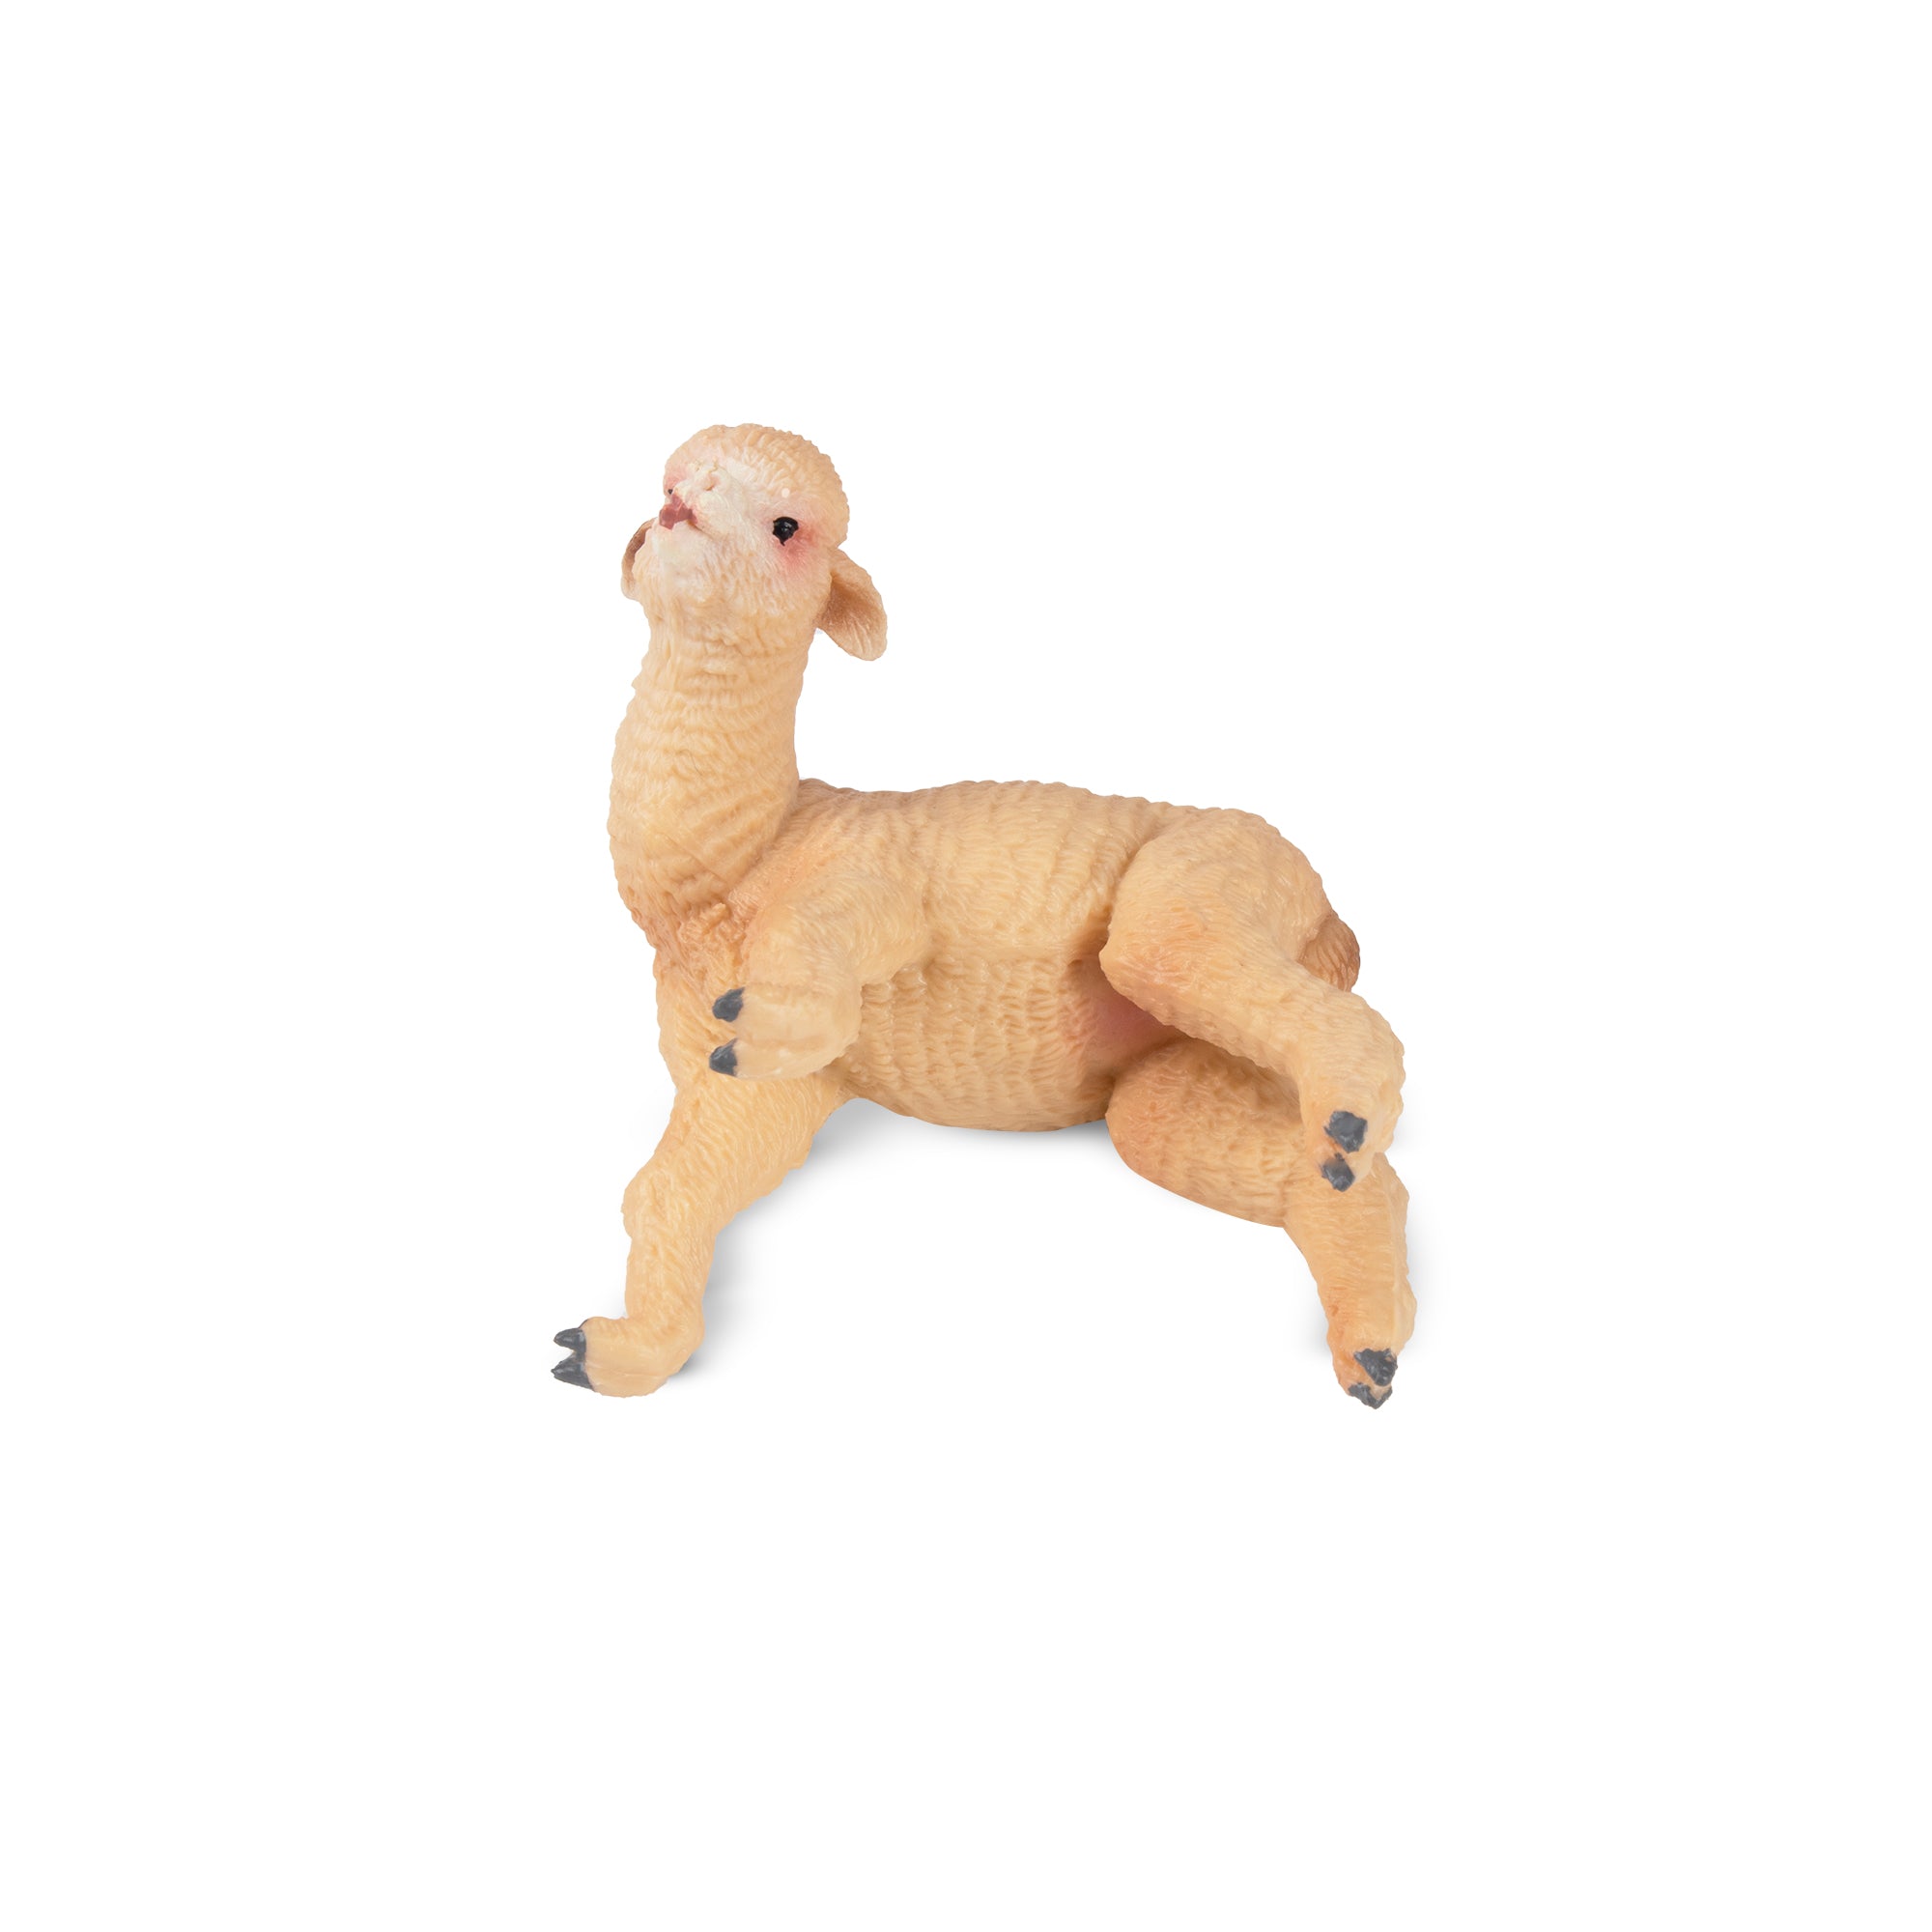 Toymany Playful Alpaca Baby Figurine Toy